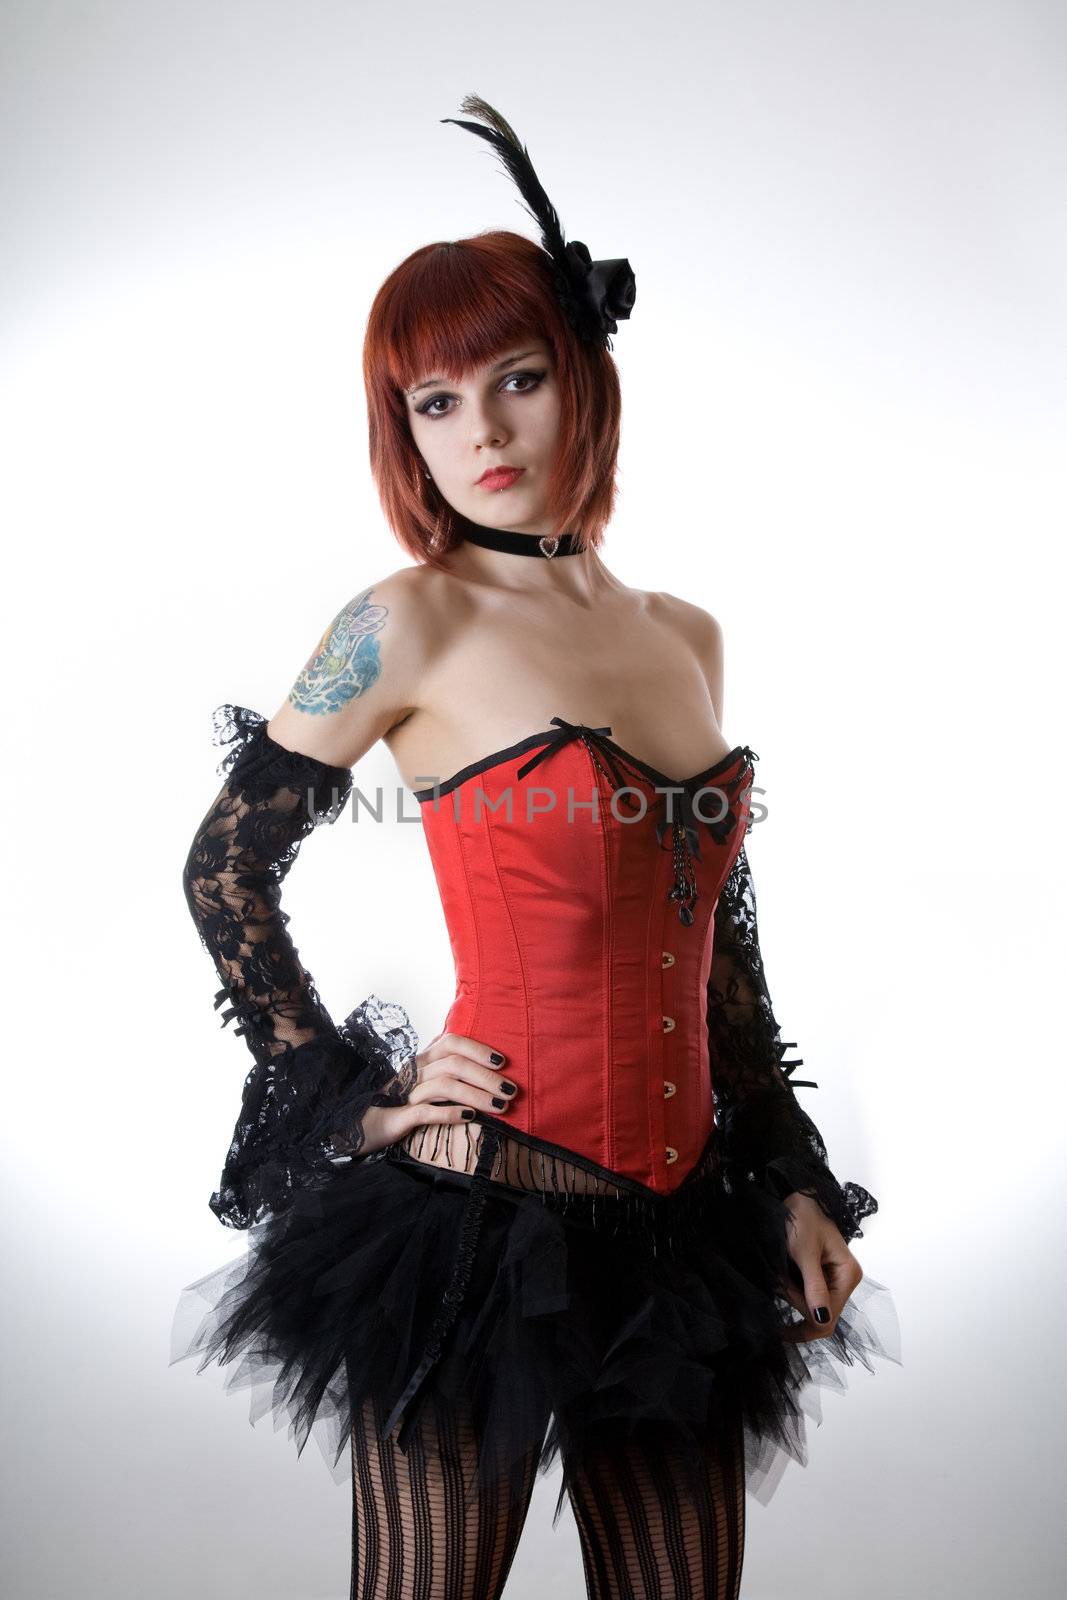 Cabaret girl in red corset, studio shot over light background 